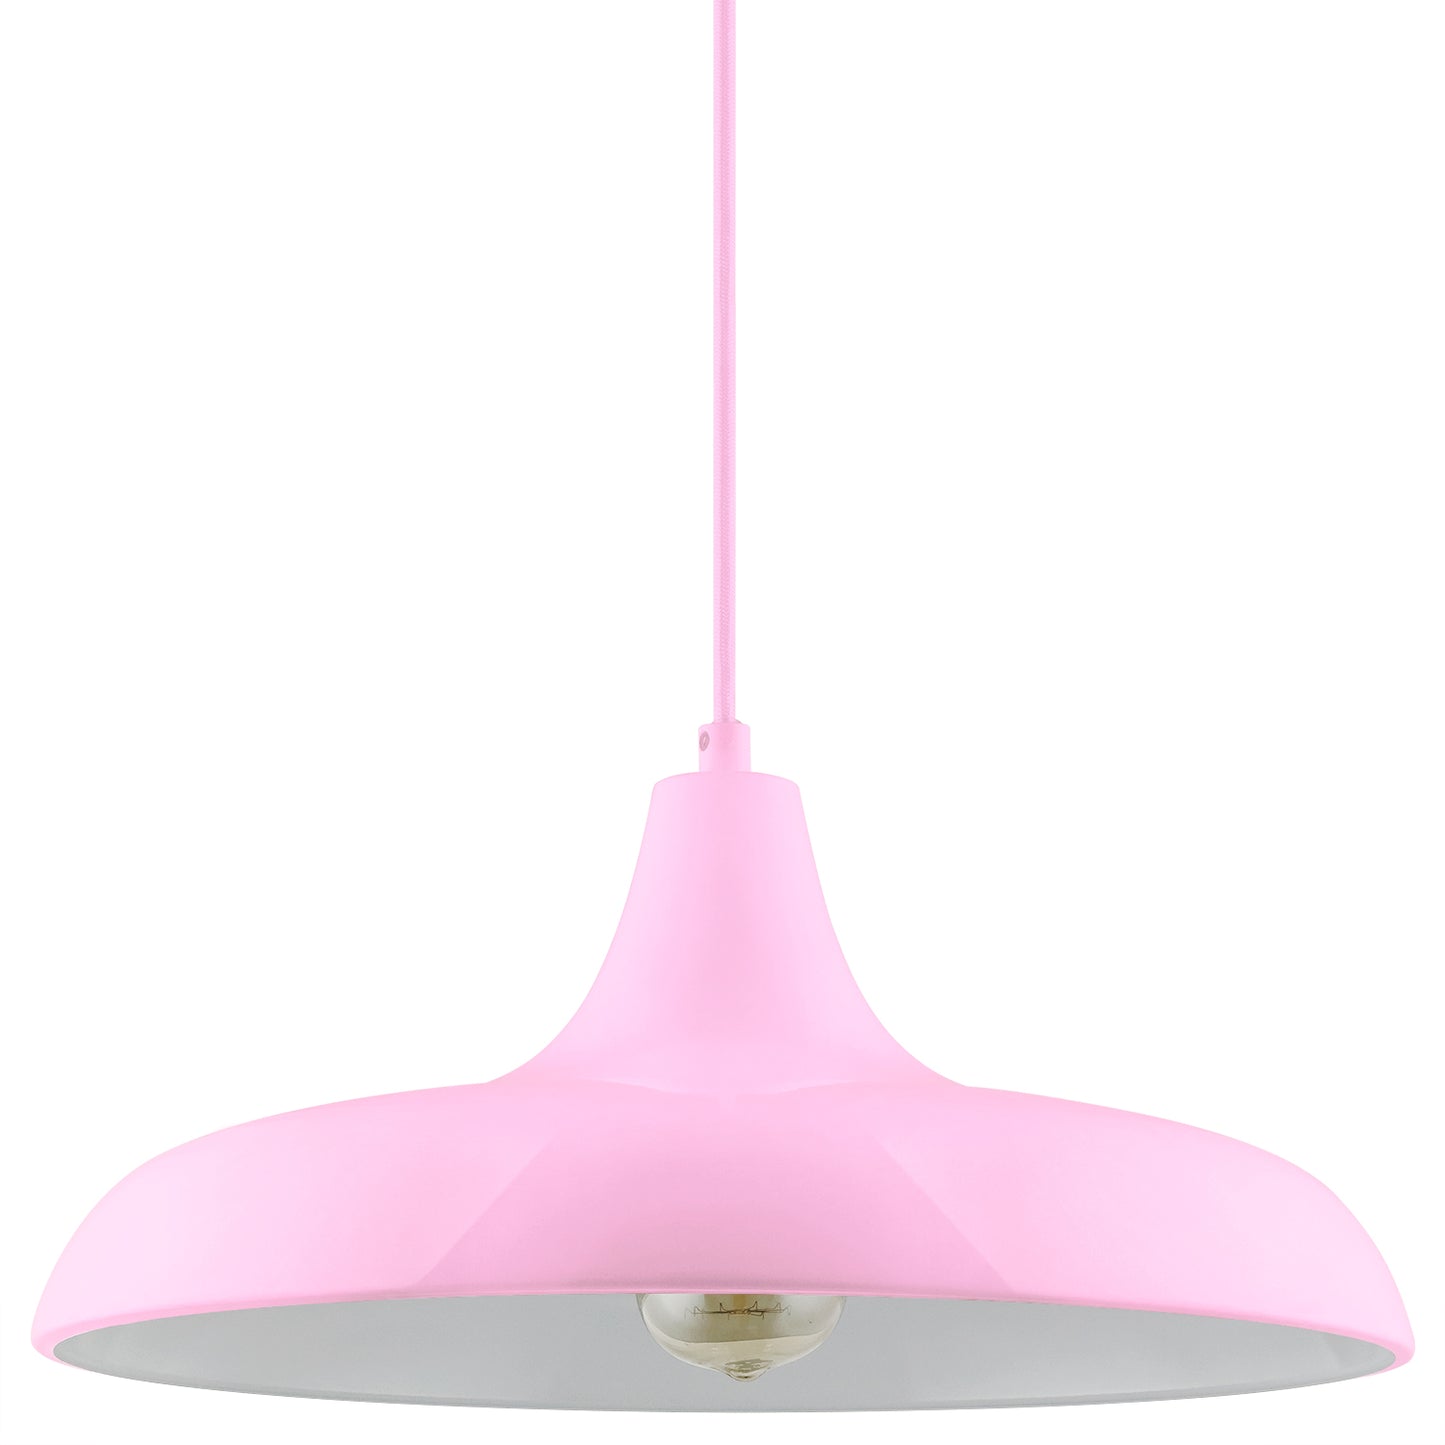 Sunlite - Pink Nova Residential Ceiling Pendant Light Fixture